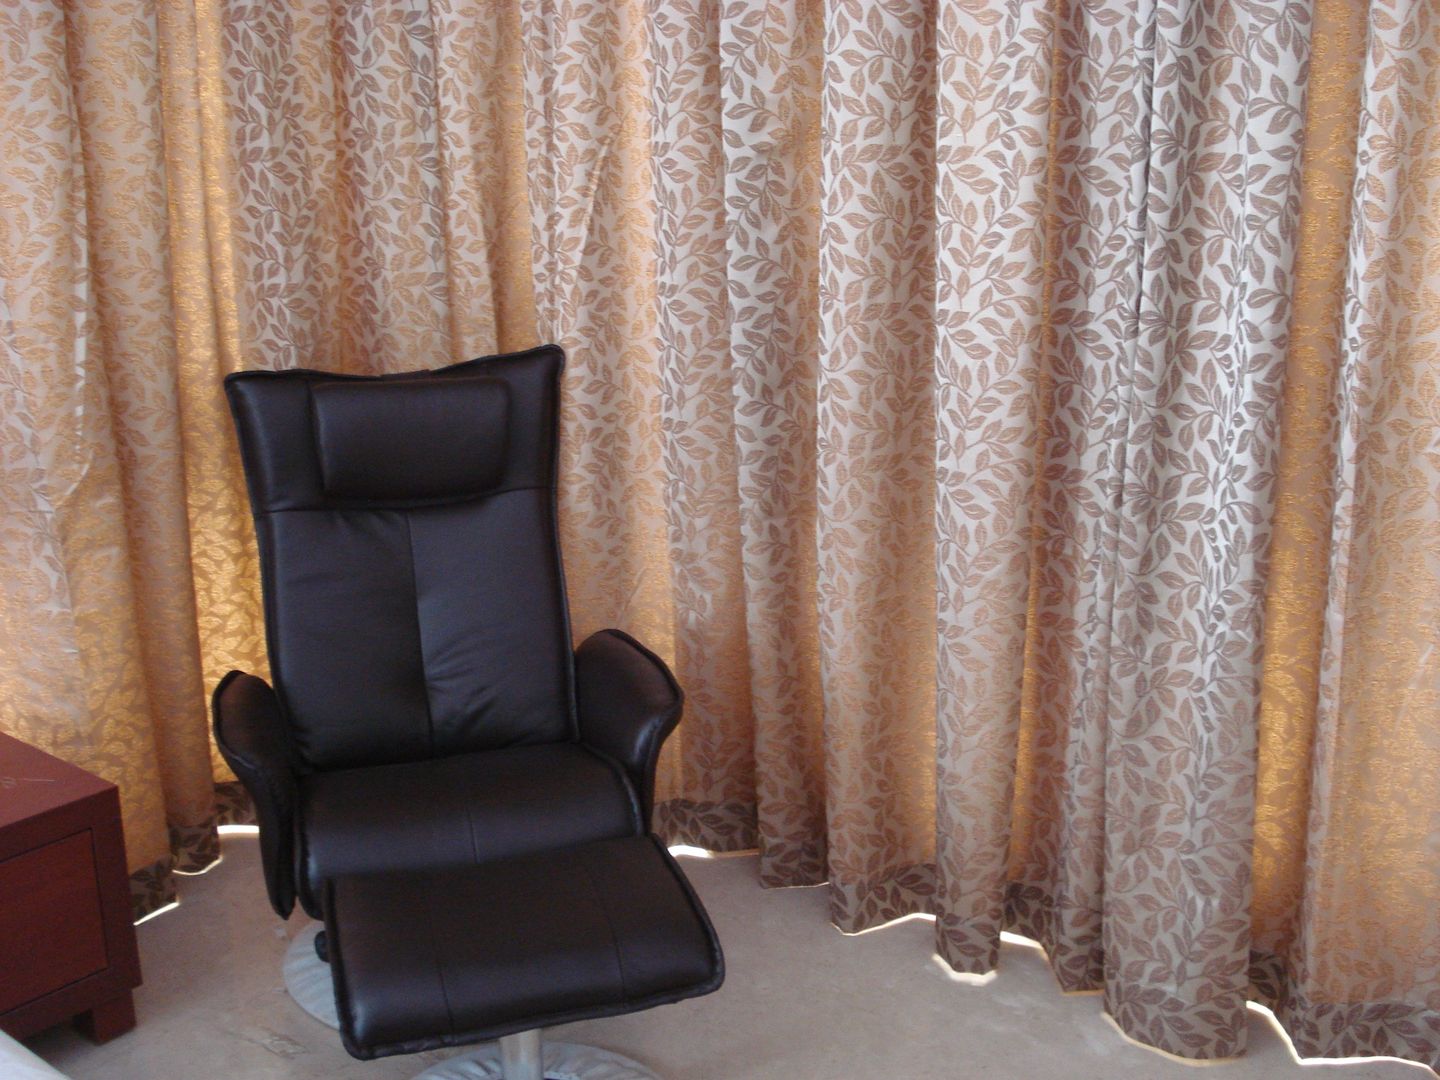 Private Apartment in Mumbai - 2300 sq. ft., DS DESIGN STUDIO DS DESIGN STUDIO Dormitorios de estilo minimalista Sofas y chaise long